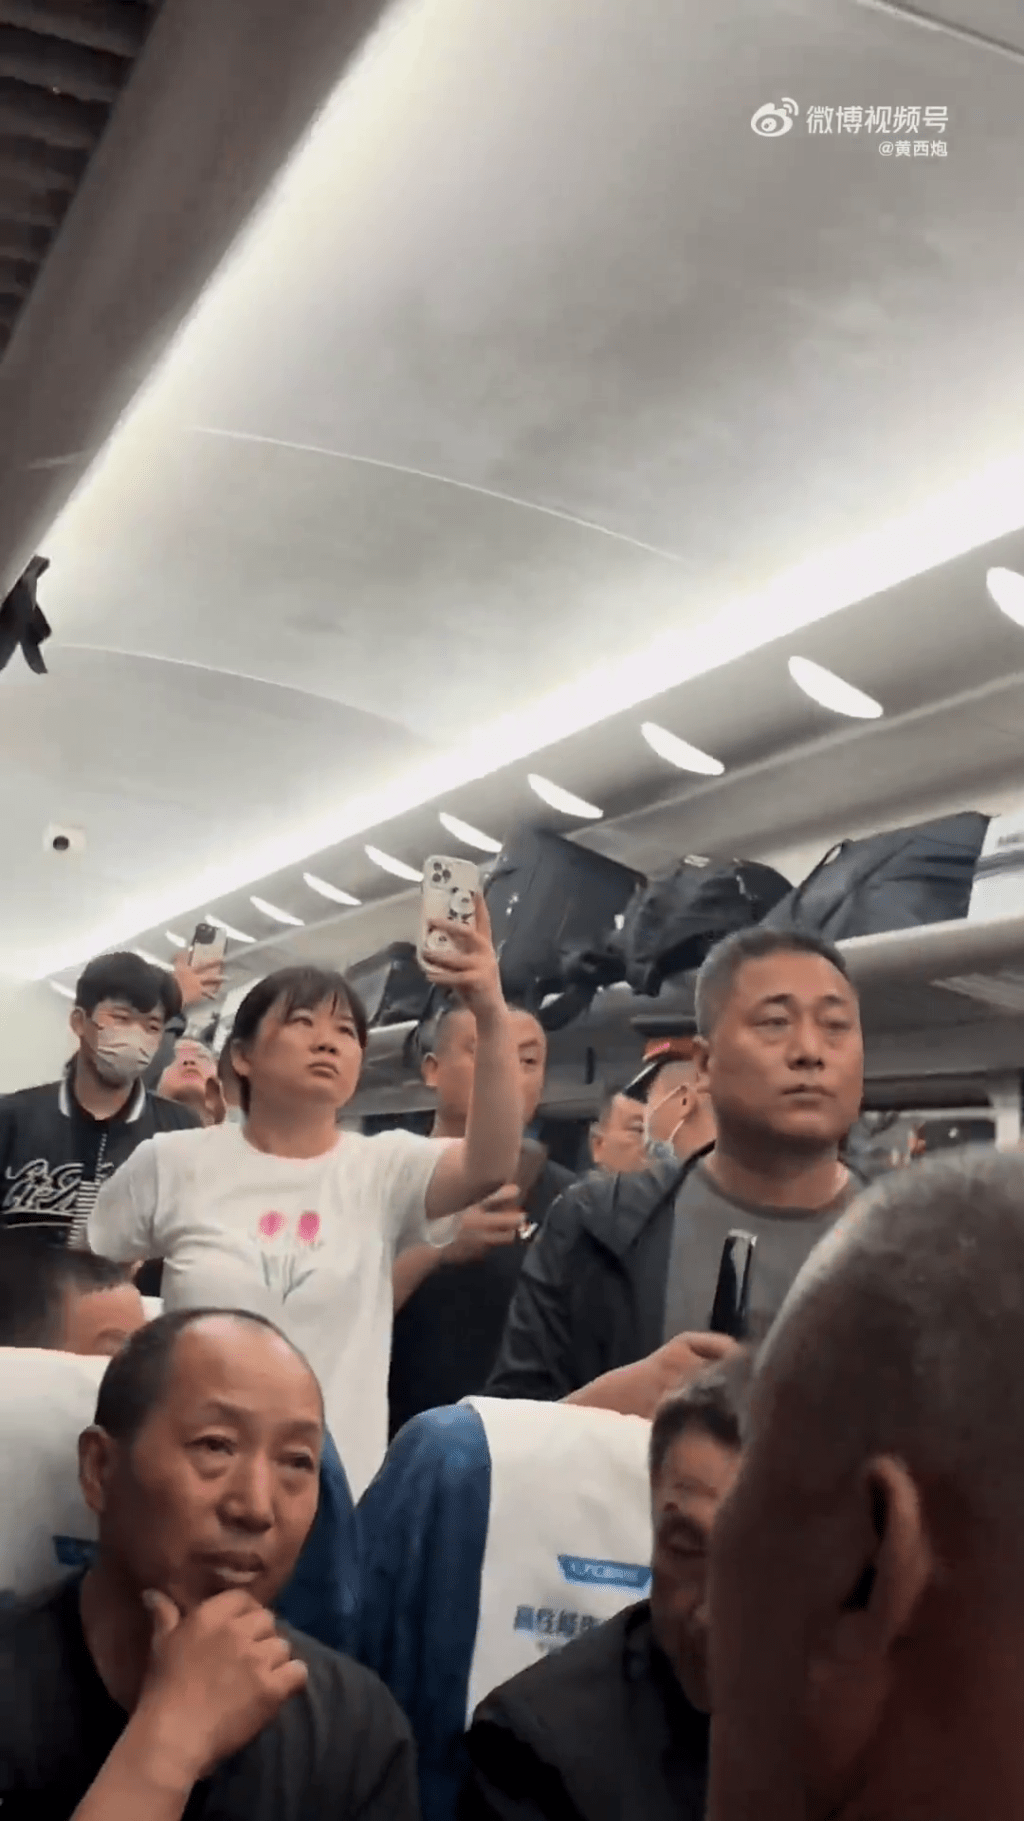 列車員說了「山東人窮」後，乘客起哄要求道歉。